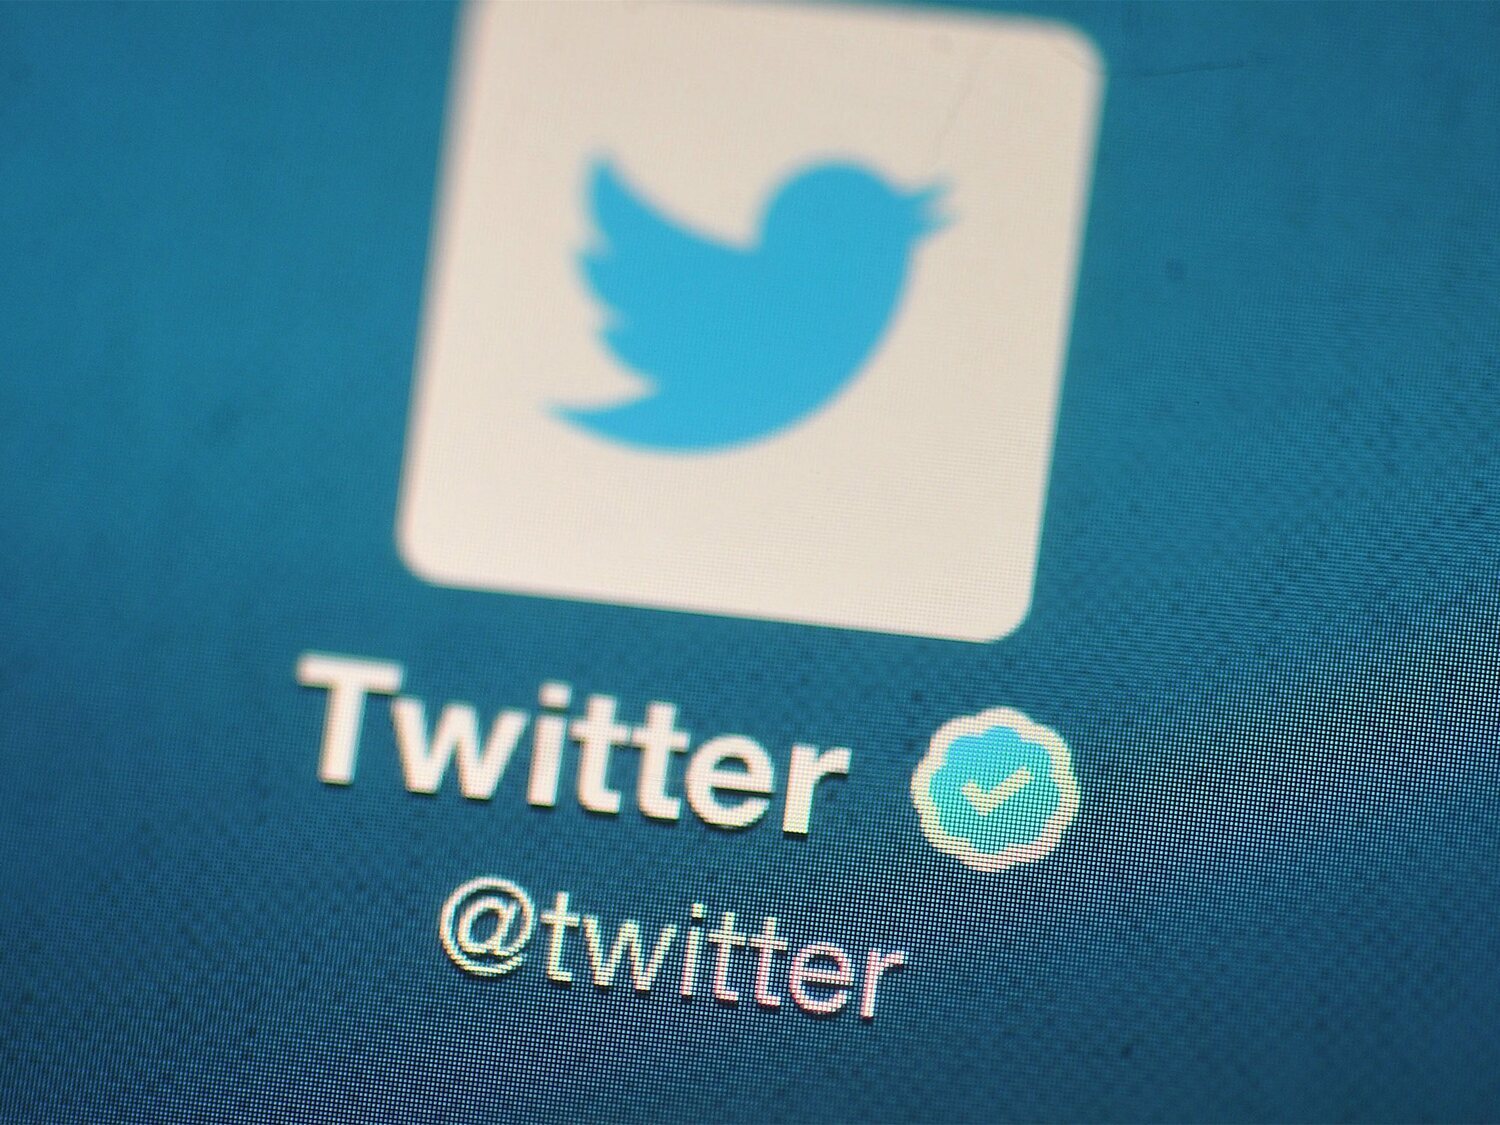 Dimiten en masa cientos de empleados de Twitter que cierra sus oficinas poniendo en peligro el futuro de la red social